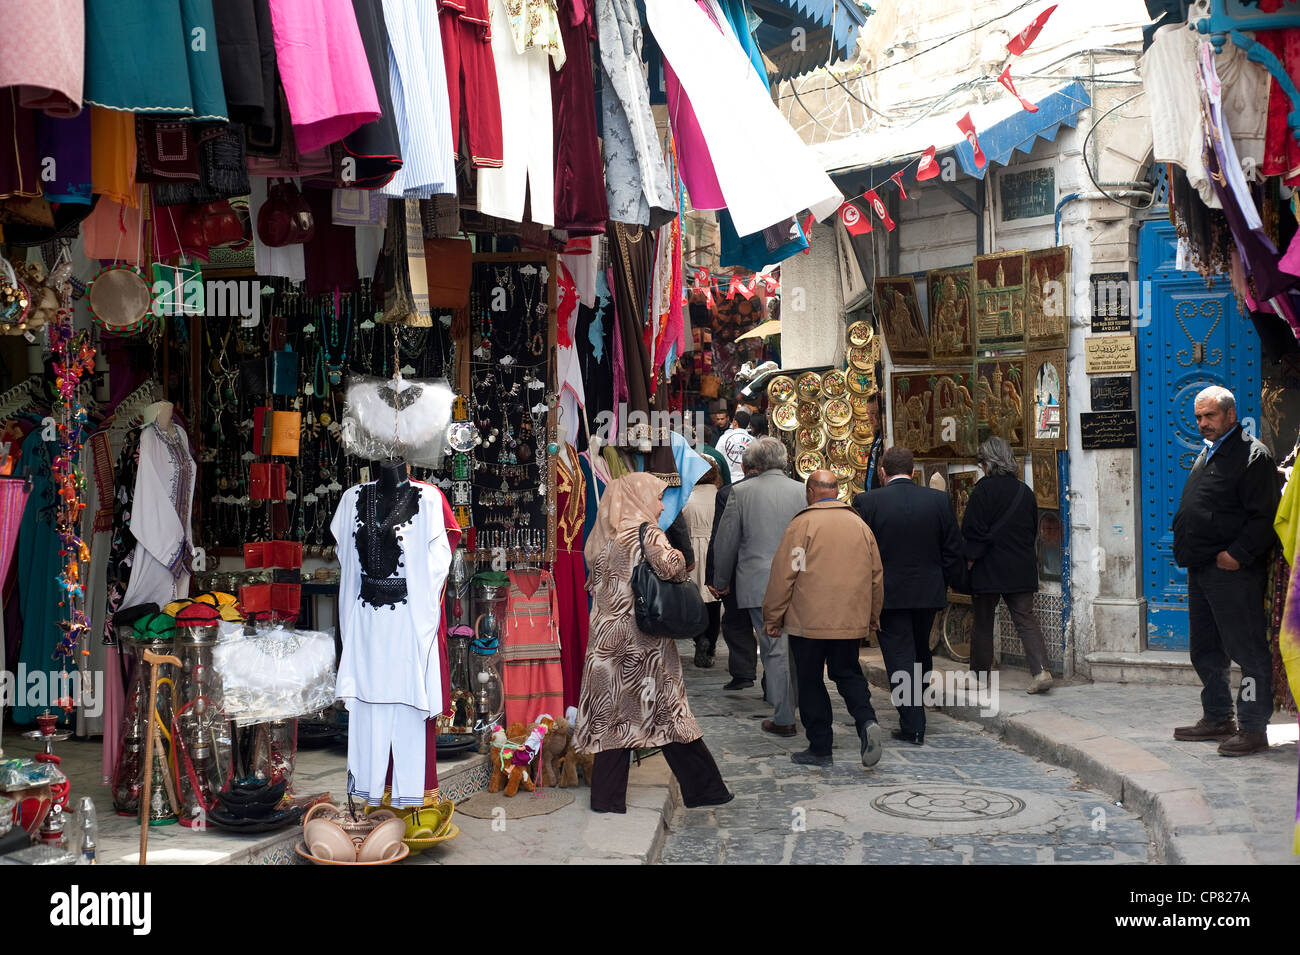 Tunis, Tunisia - Medina Souk alley. Stock Photo